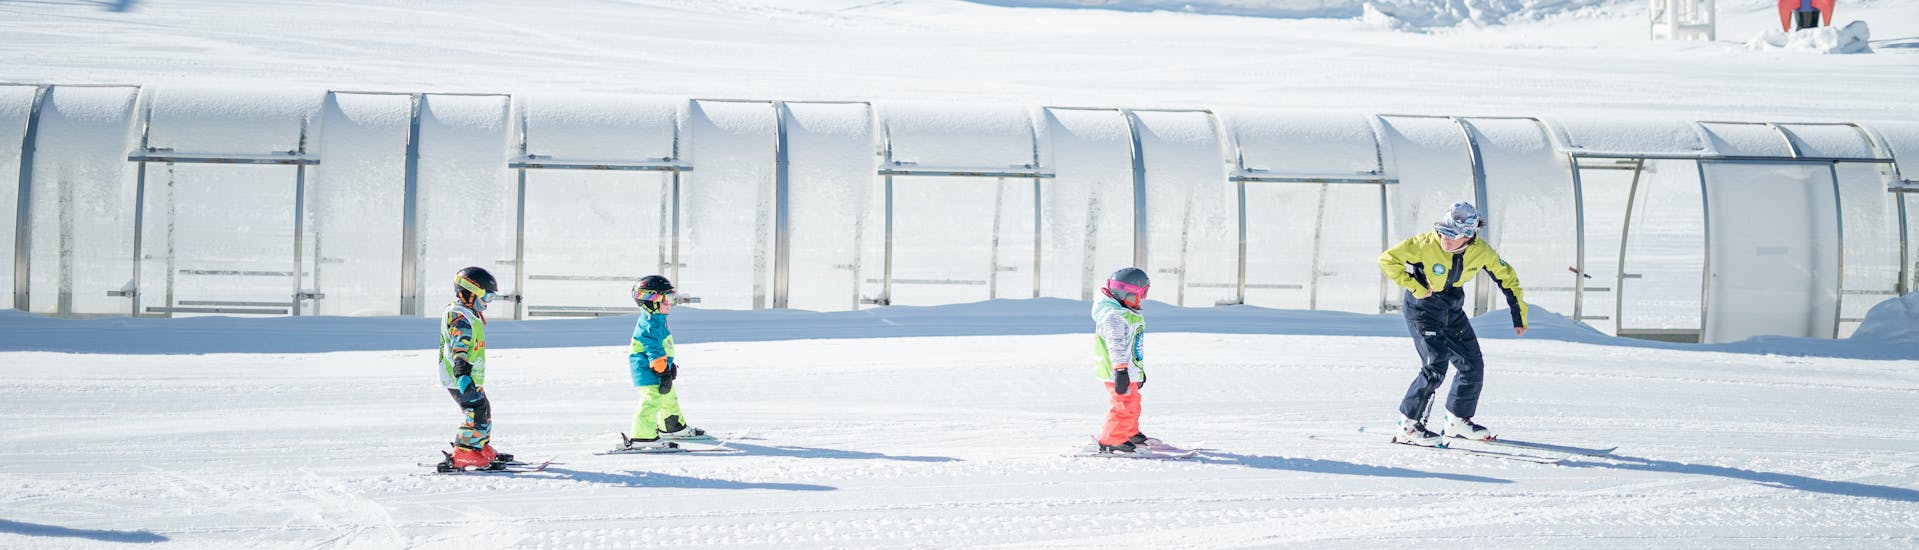 Sur la piste du jardin des neiges de Prosneige Tignes a lieu un cours de ski pour enfants "Petit Ours".